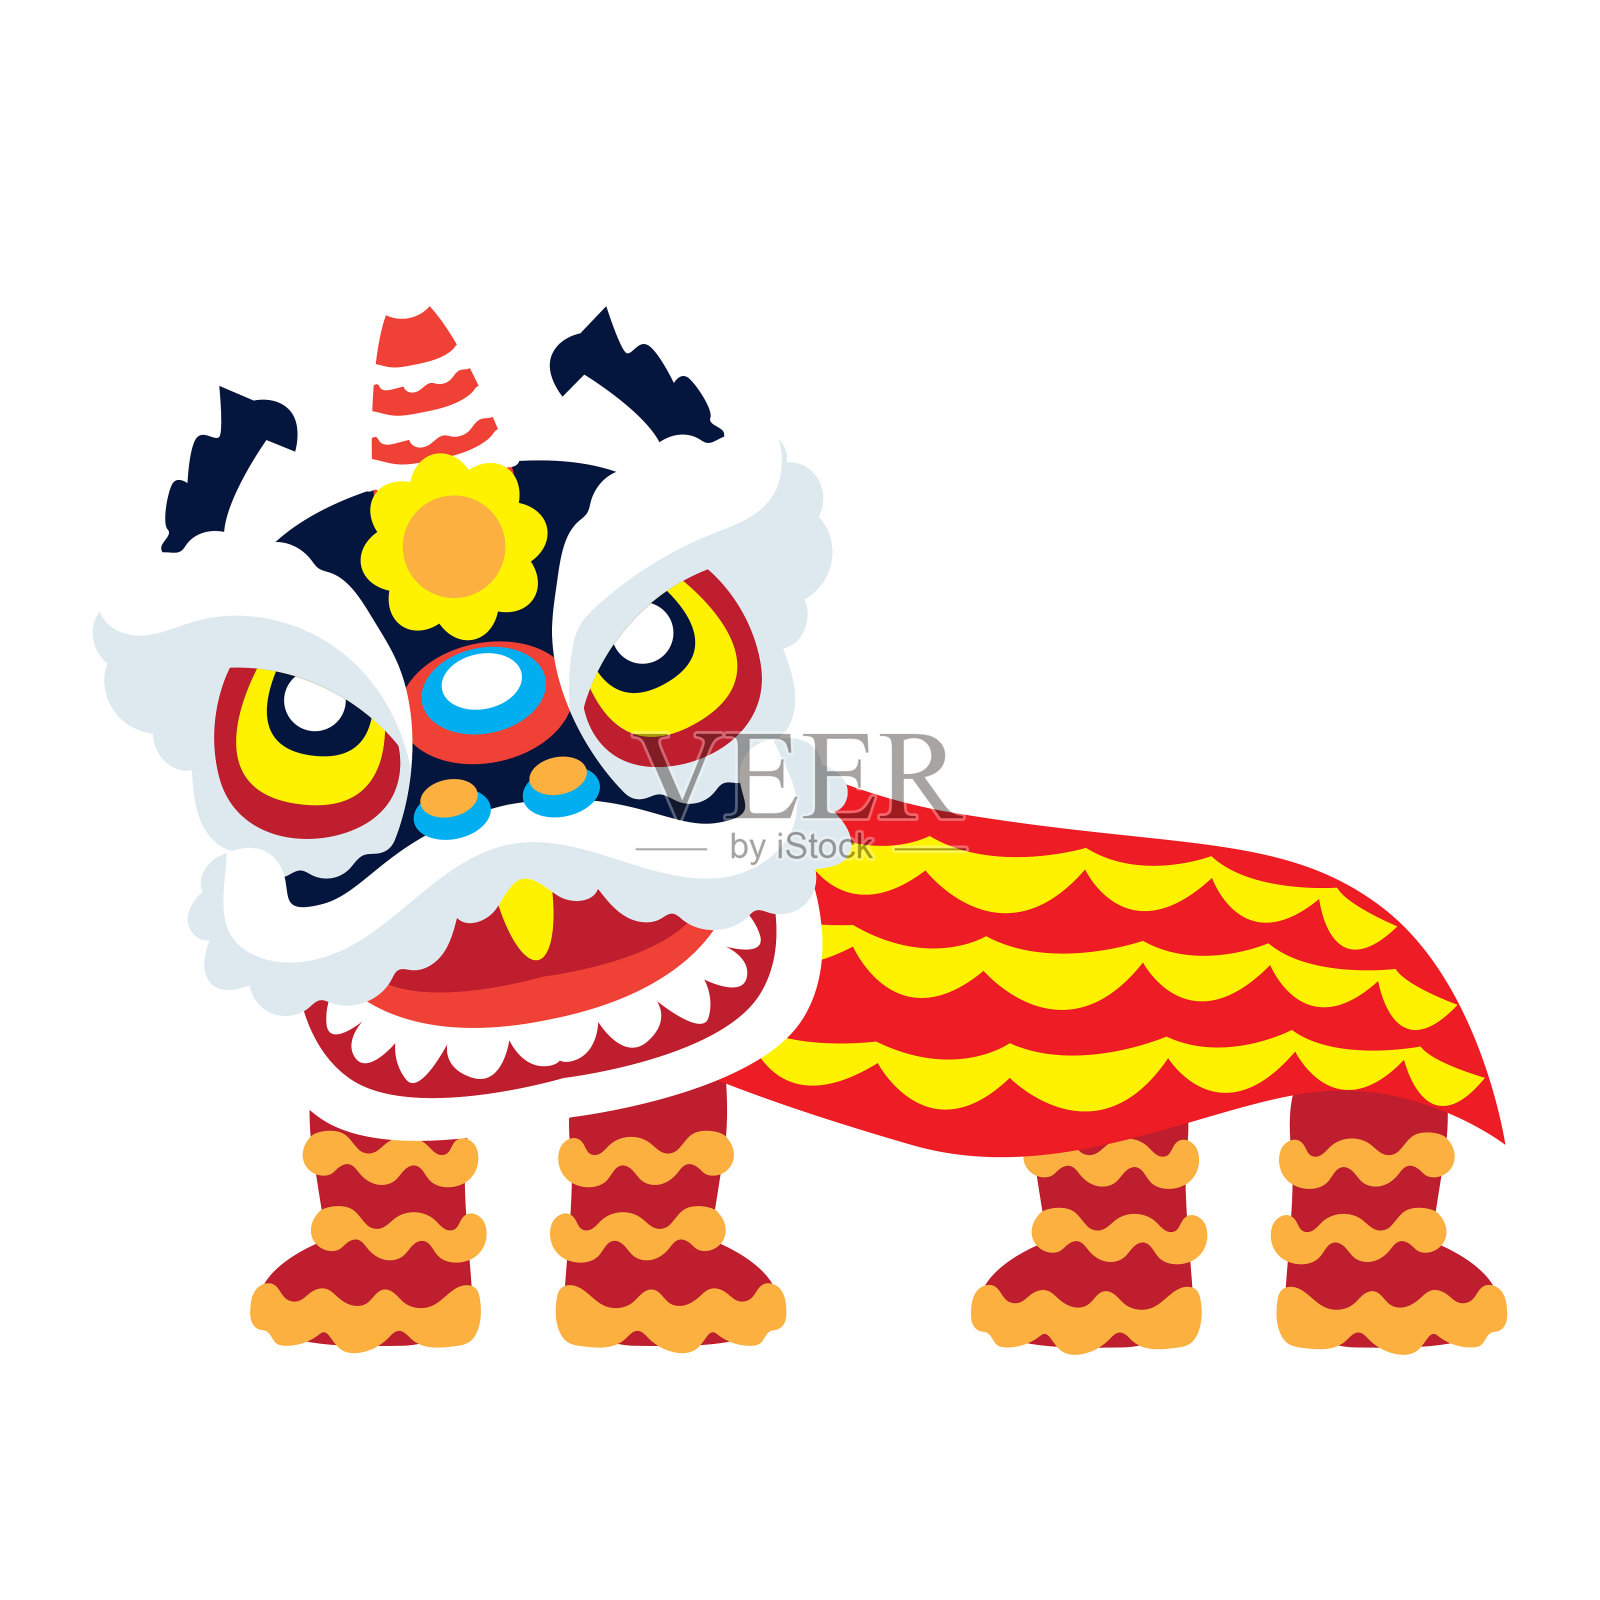 舞狮是中国新年的节日。矢量图设计元素图片